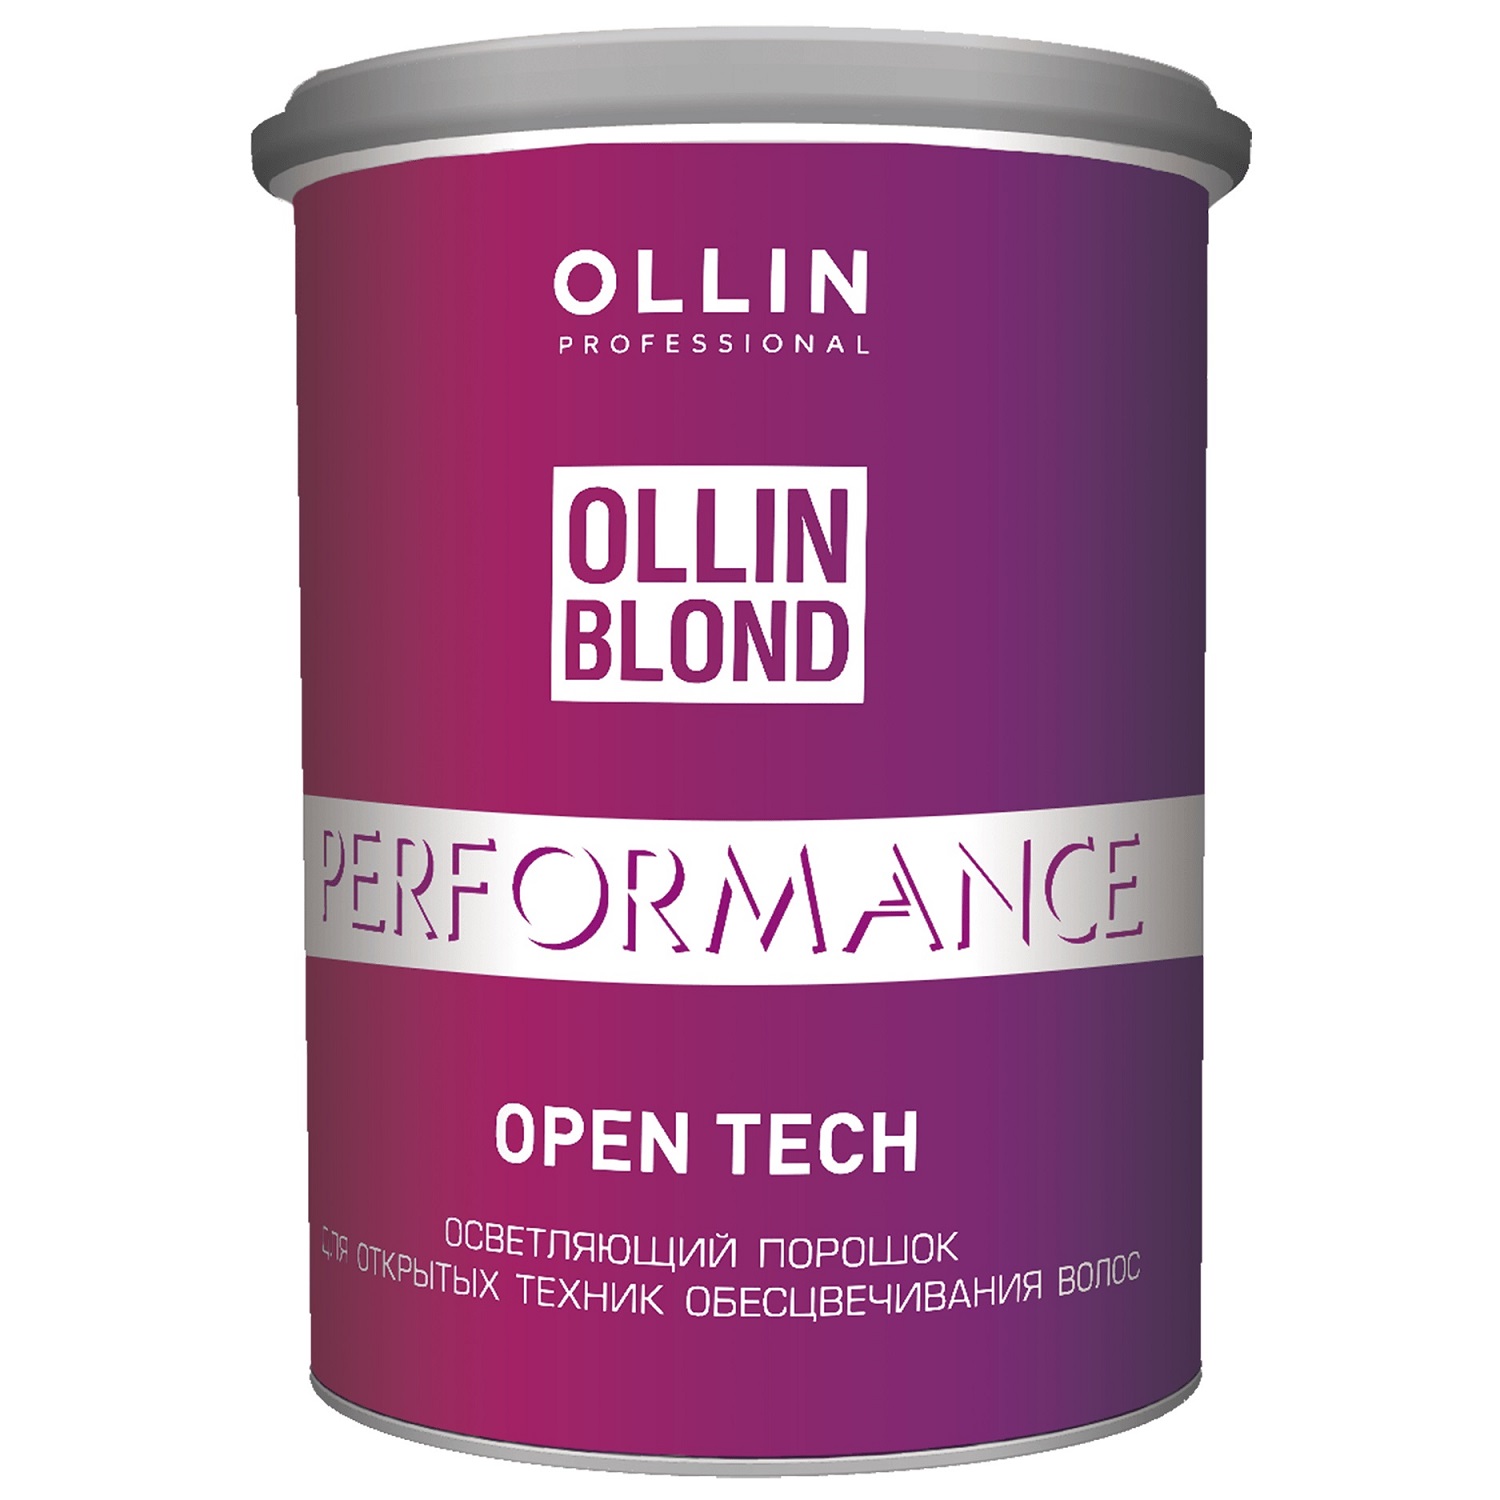 Купить Осветляющий порошок Ollin Professional для открытых техник обесцвечивания волос 500г